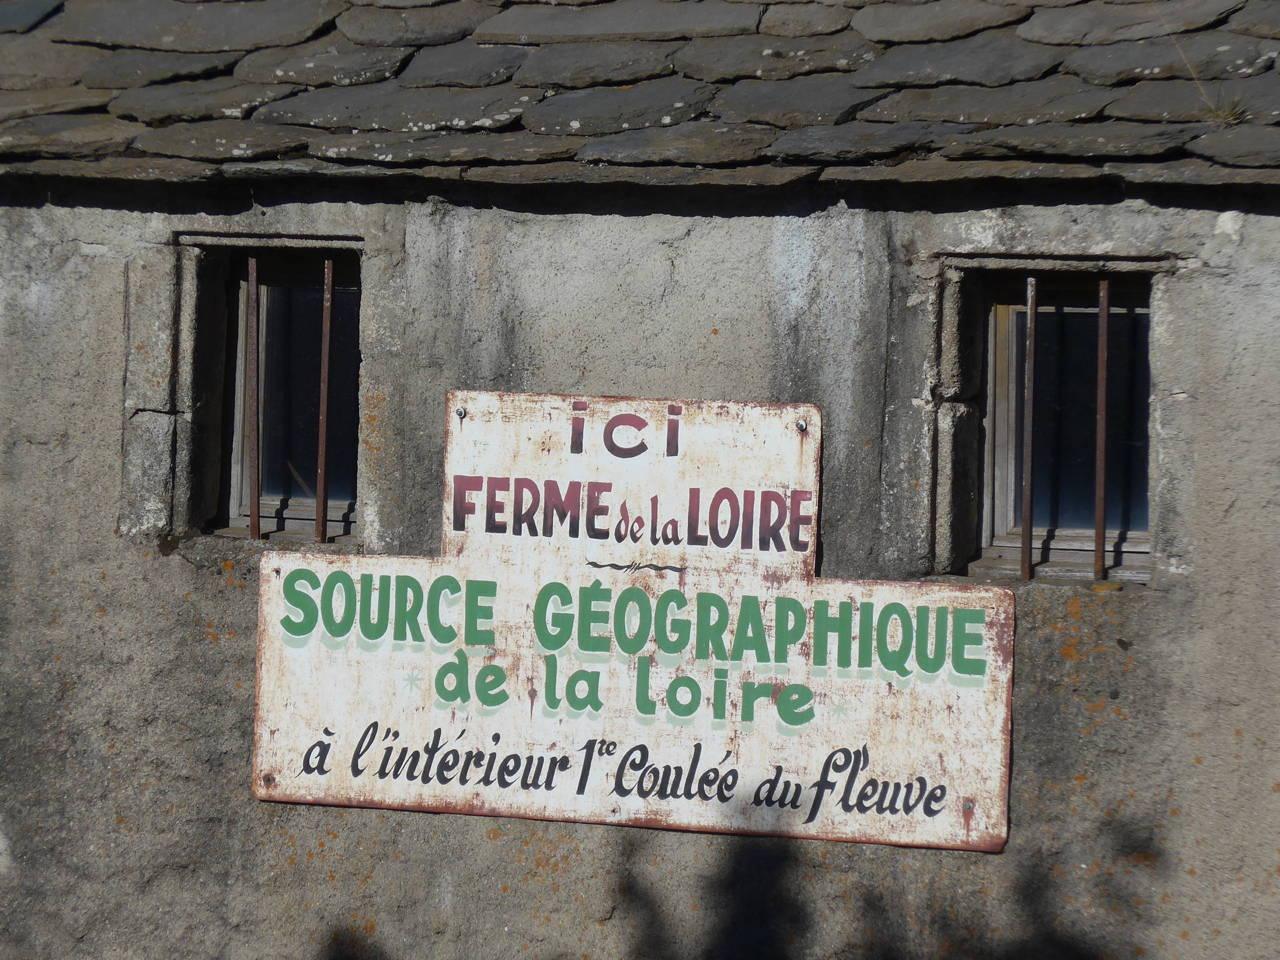 Source de la Loire